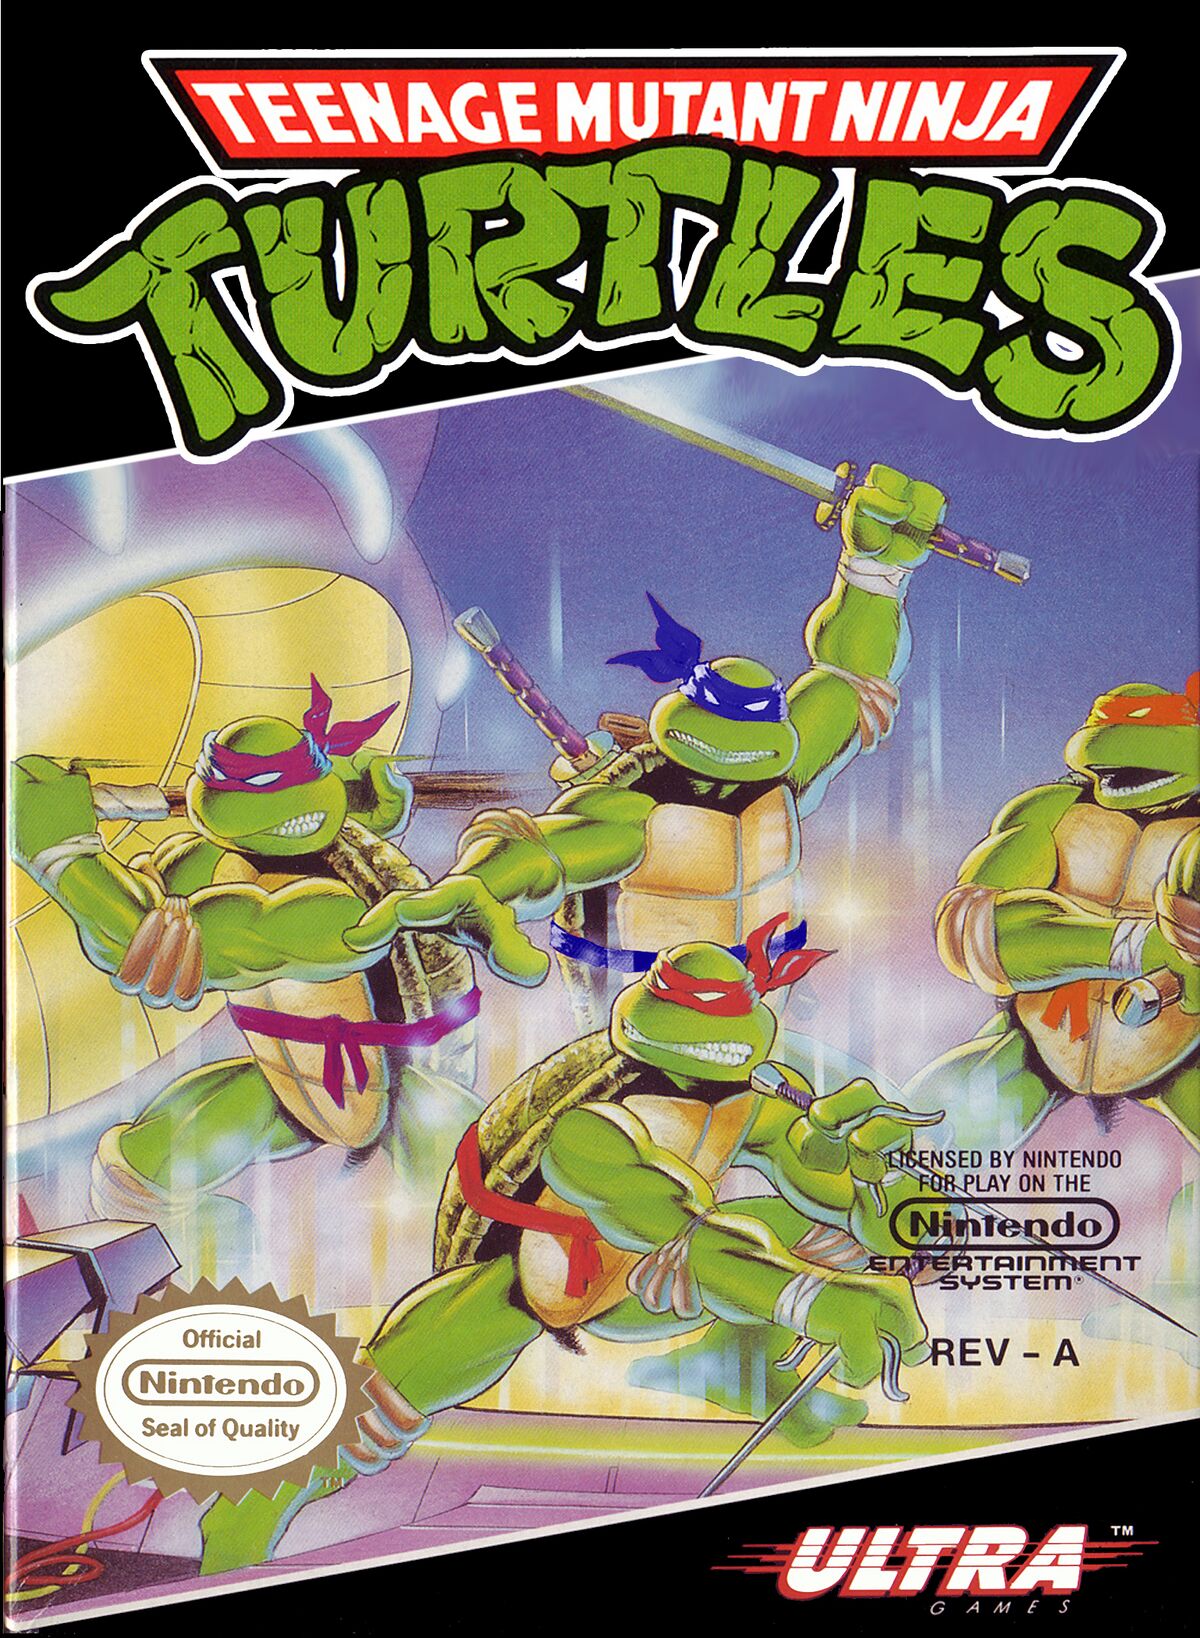 Teenage Mutant Ninja Turtles Legends - Wikipedia